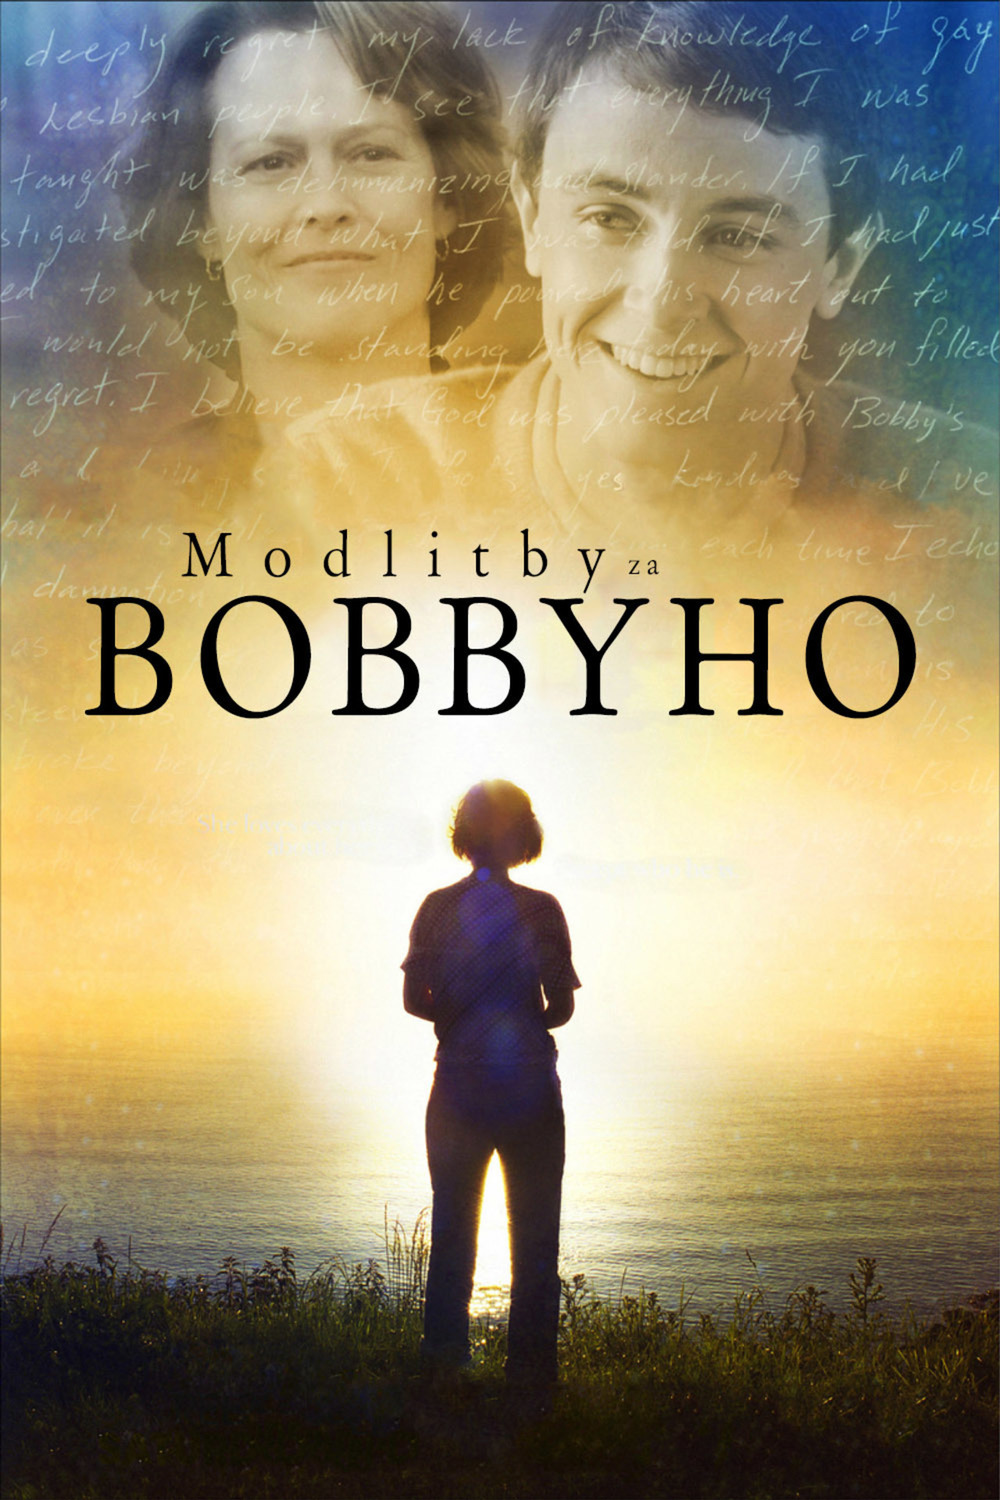 Modlitby za Bobbyho | Fandíme filmu